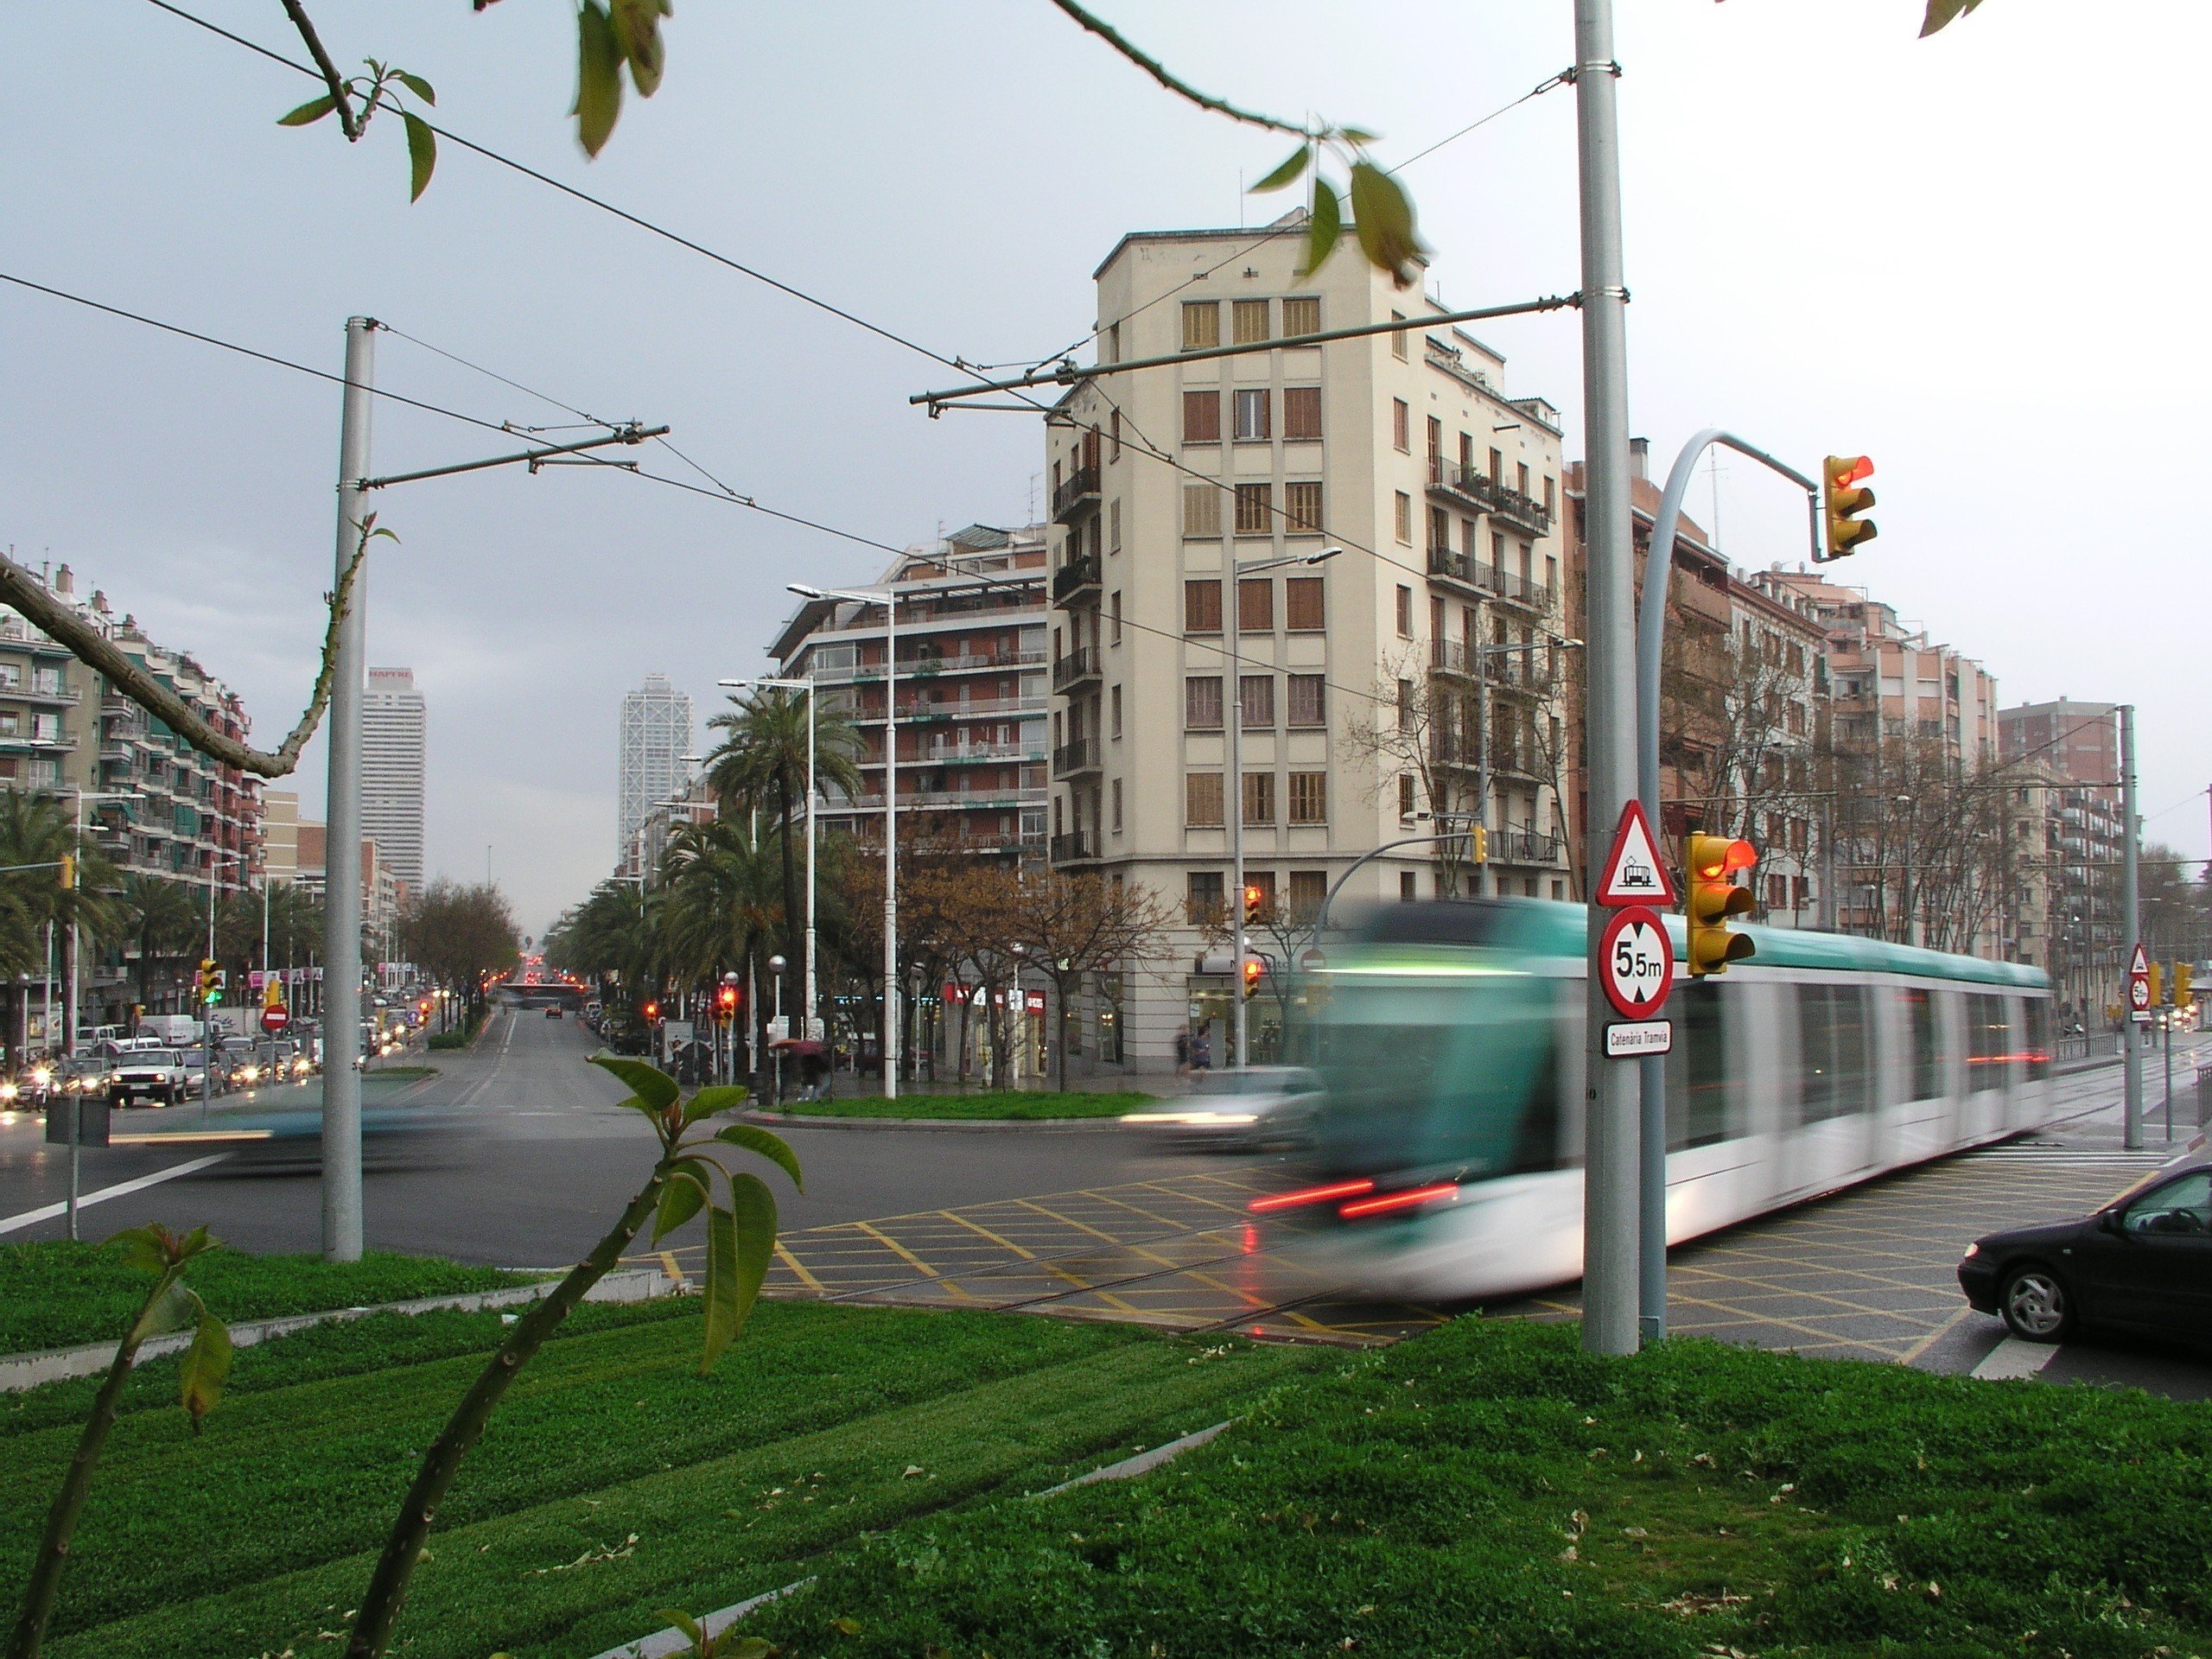 Les obres per connectar el tramvia per la Diagonal començaran el 2021